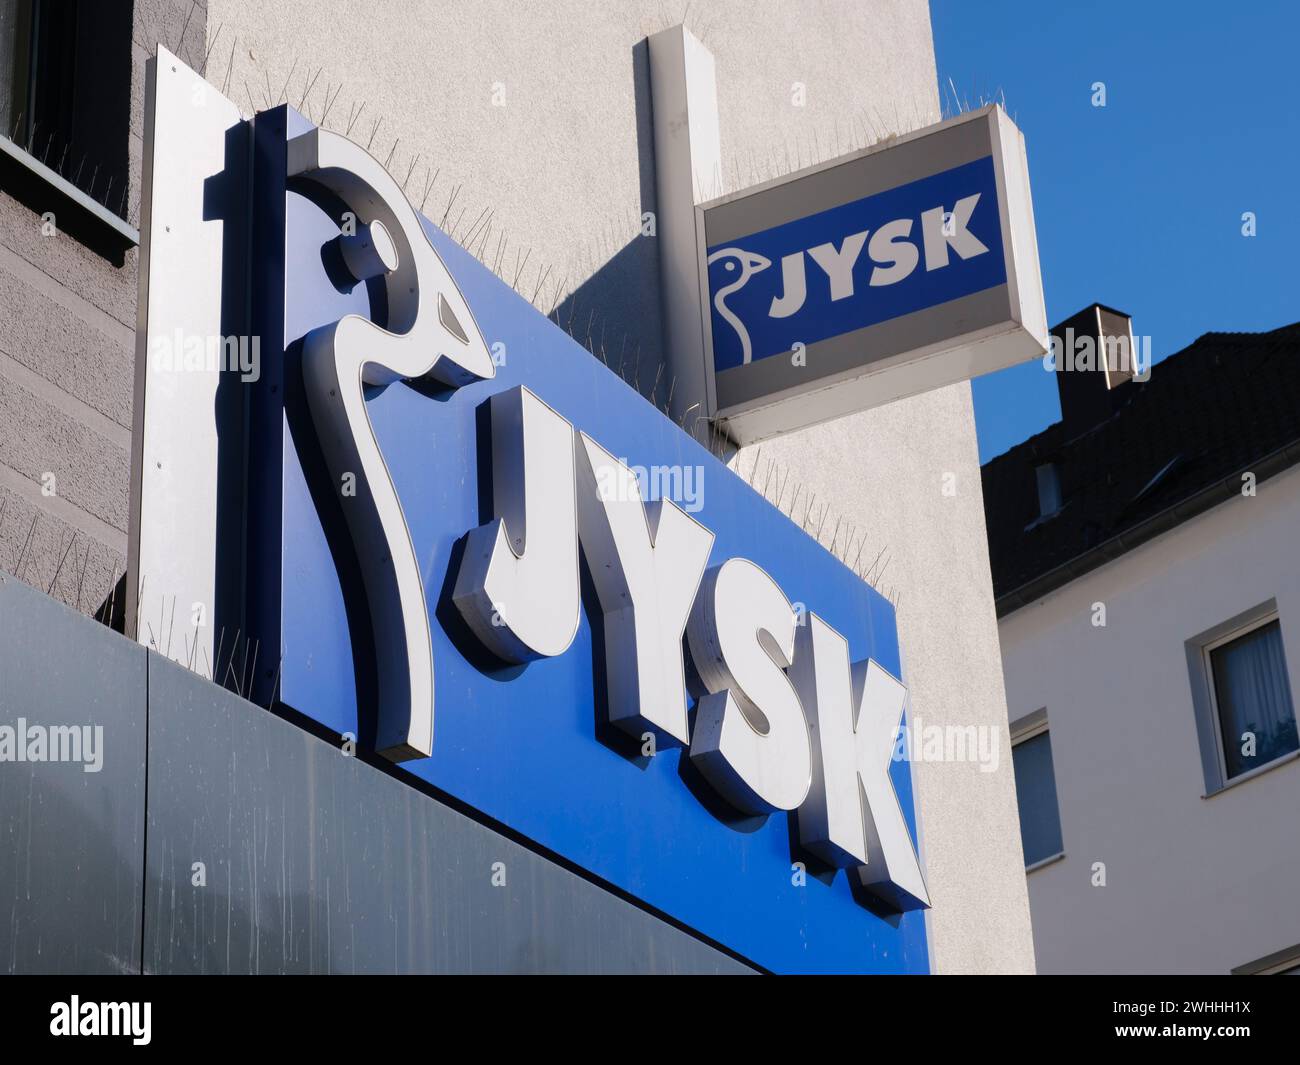 Façade avec chant et logo de JYSK Banque D'Images